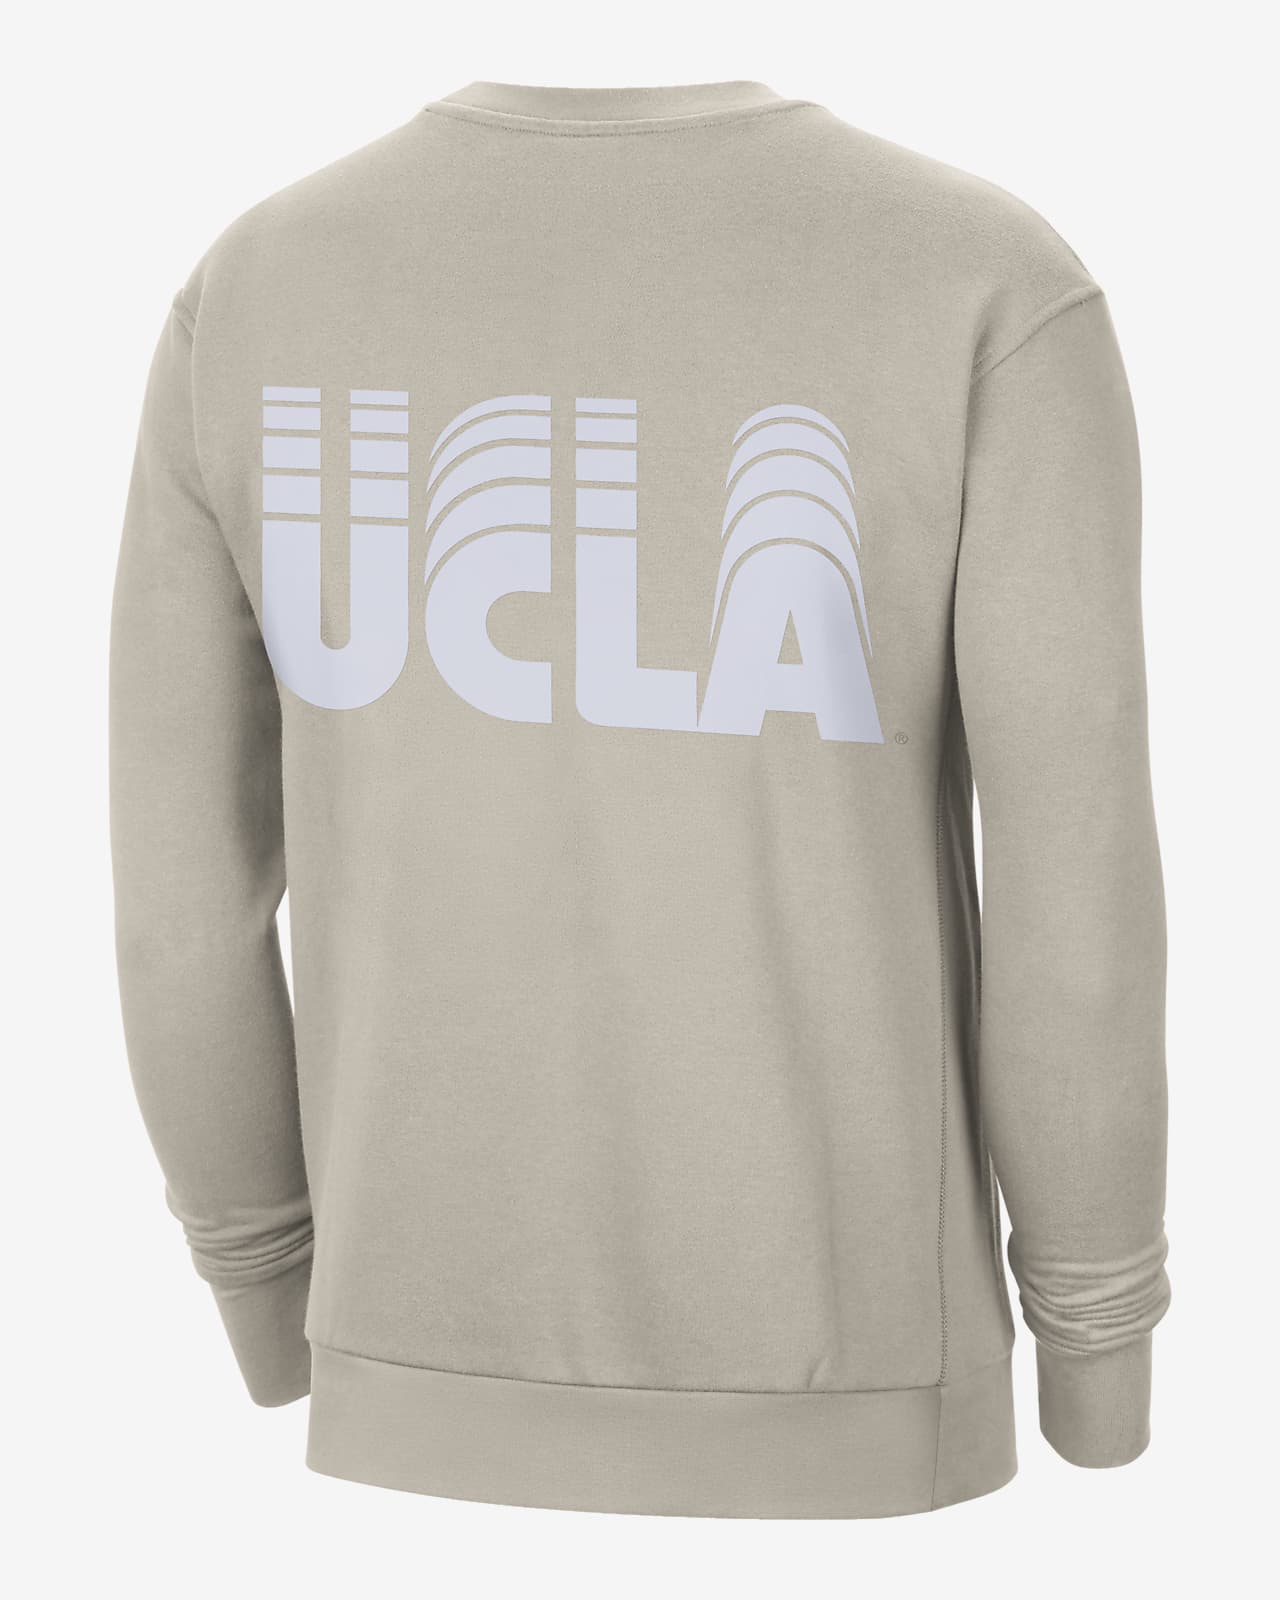 milla nautica ranura hacer los deberes Sudadera con cuello redondo Nike College para hombre UCLA. Nike.com